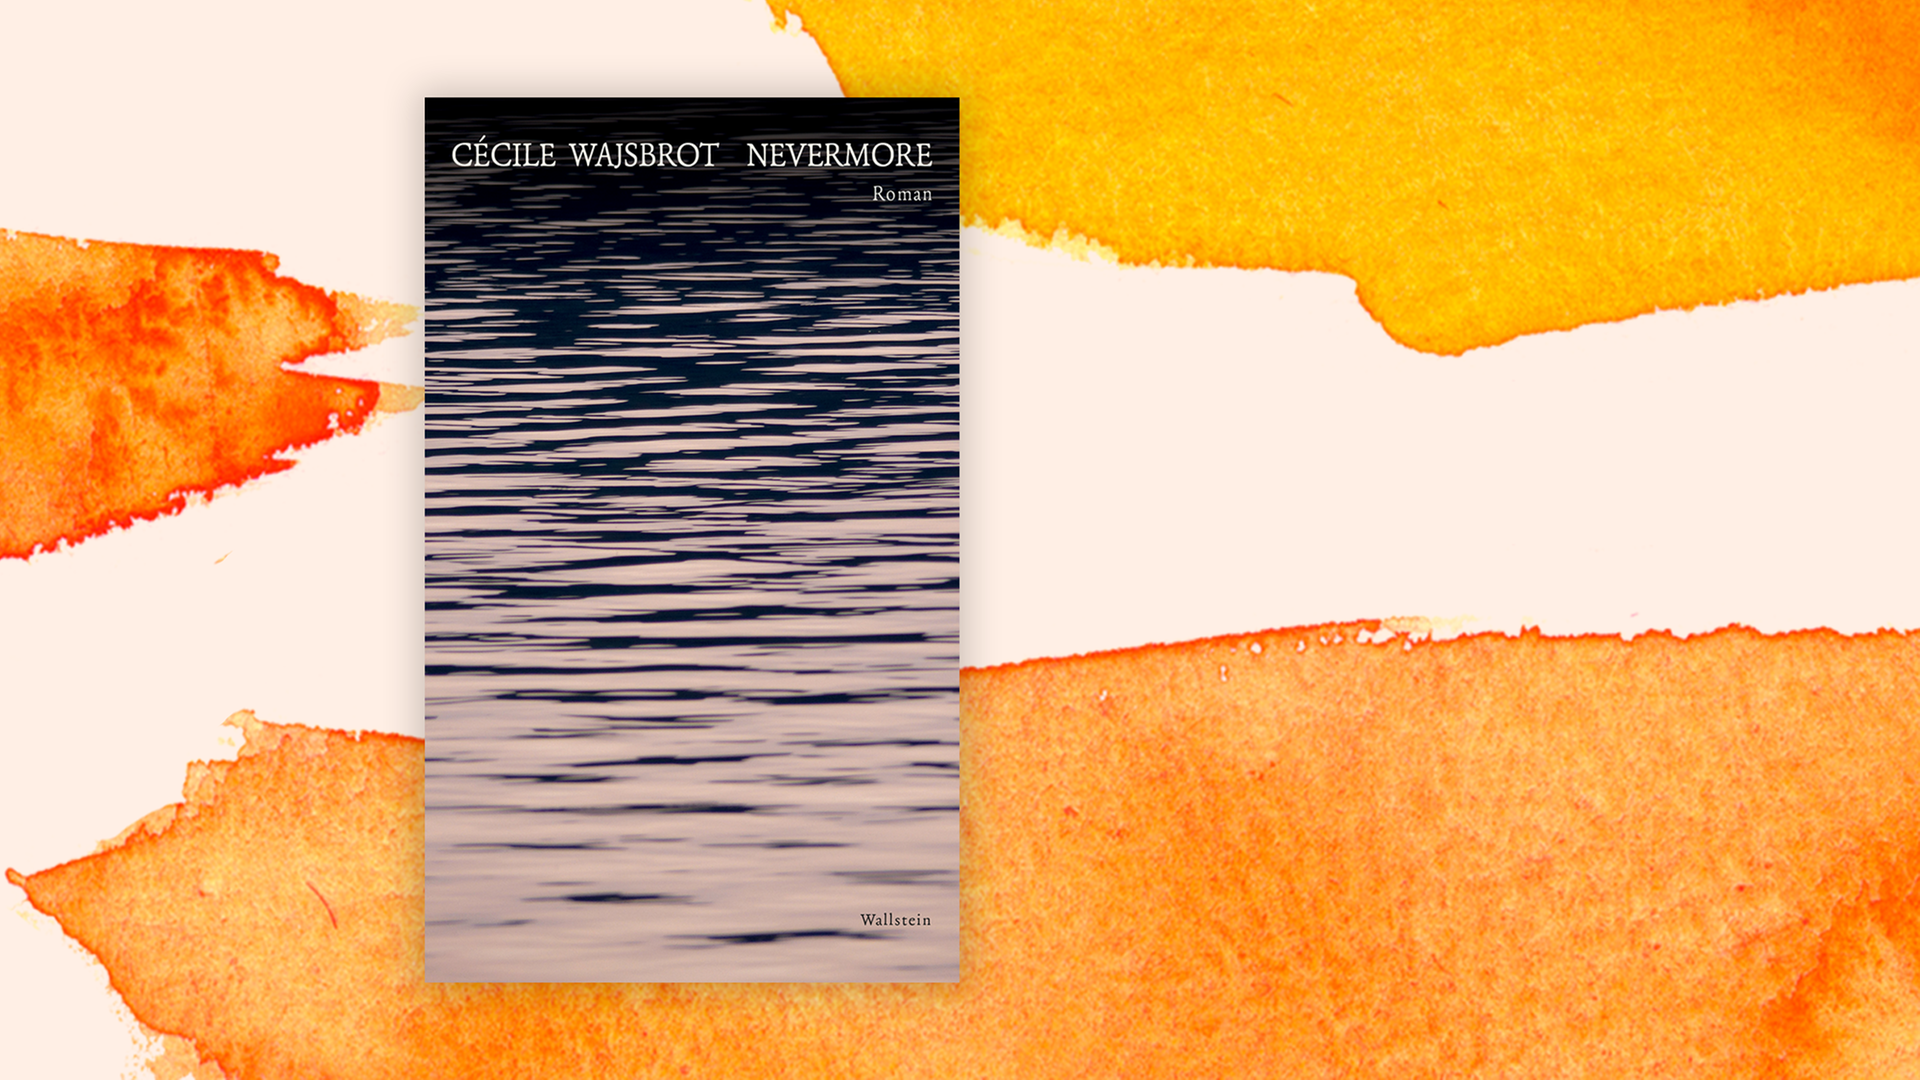 Zu sehen ist das Cover des Buches "Nevermore" von Cécile Wajsbrot.